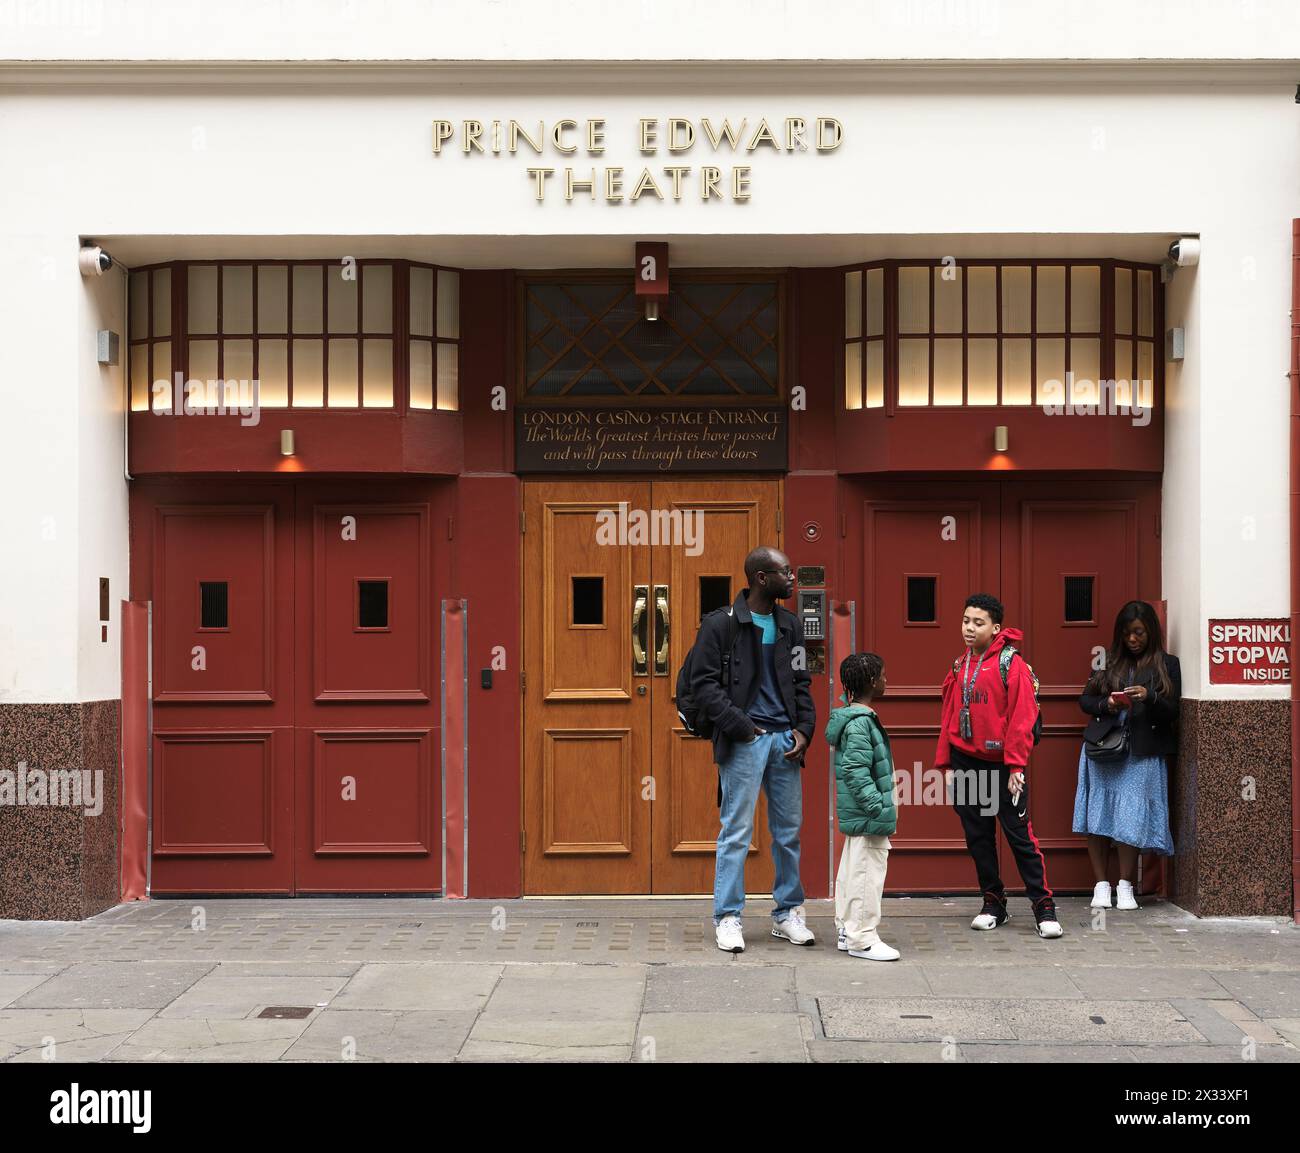 Una famiglia attende fuori dall'ingresso del palcoscenico del London Casino al teatro Prince Edward (un luogo in cui Mozart visse, suonò e si esibì nel 1764-5), Foto Stock